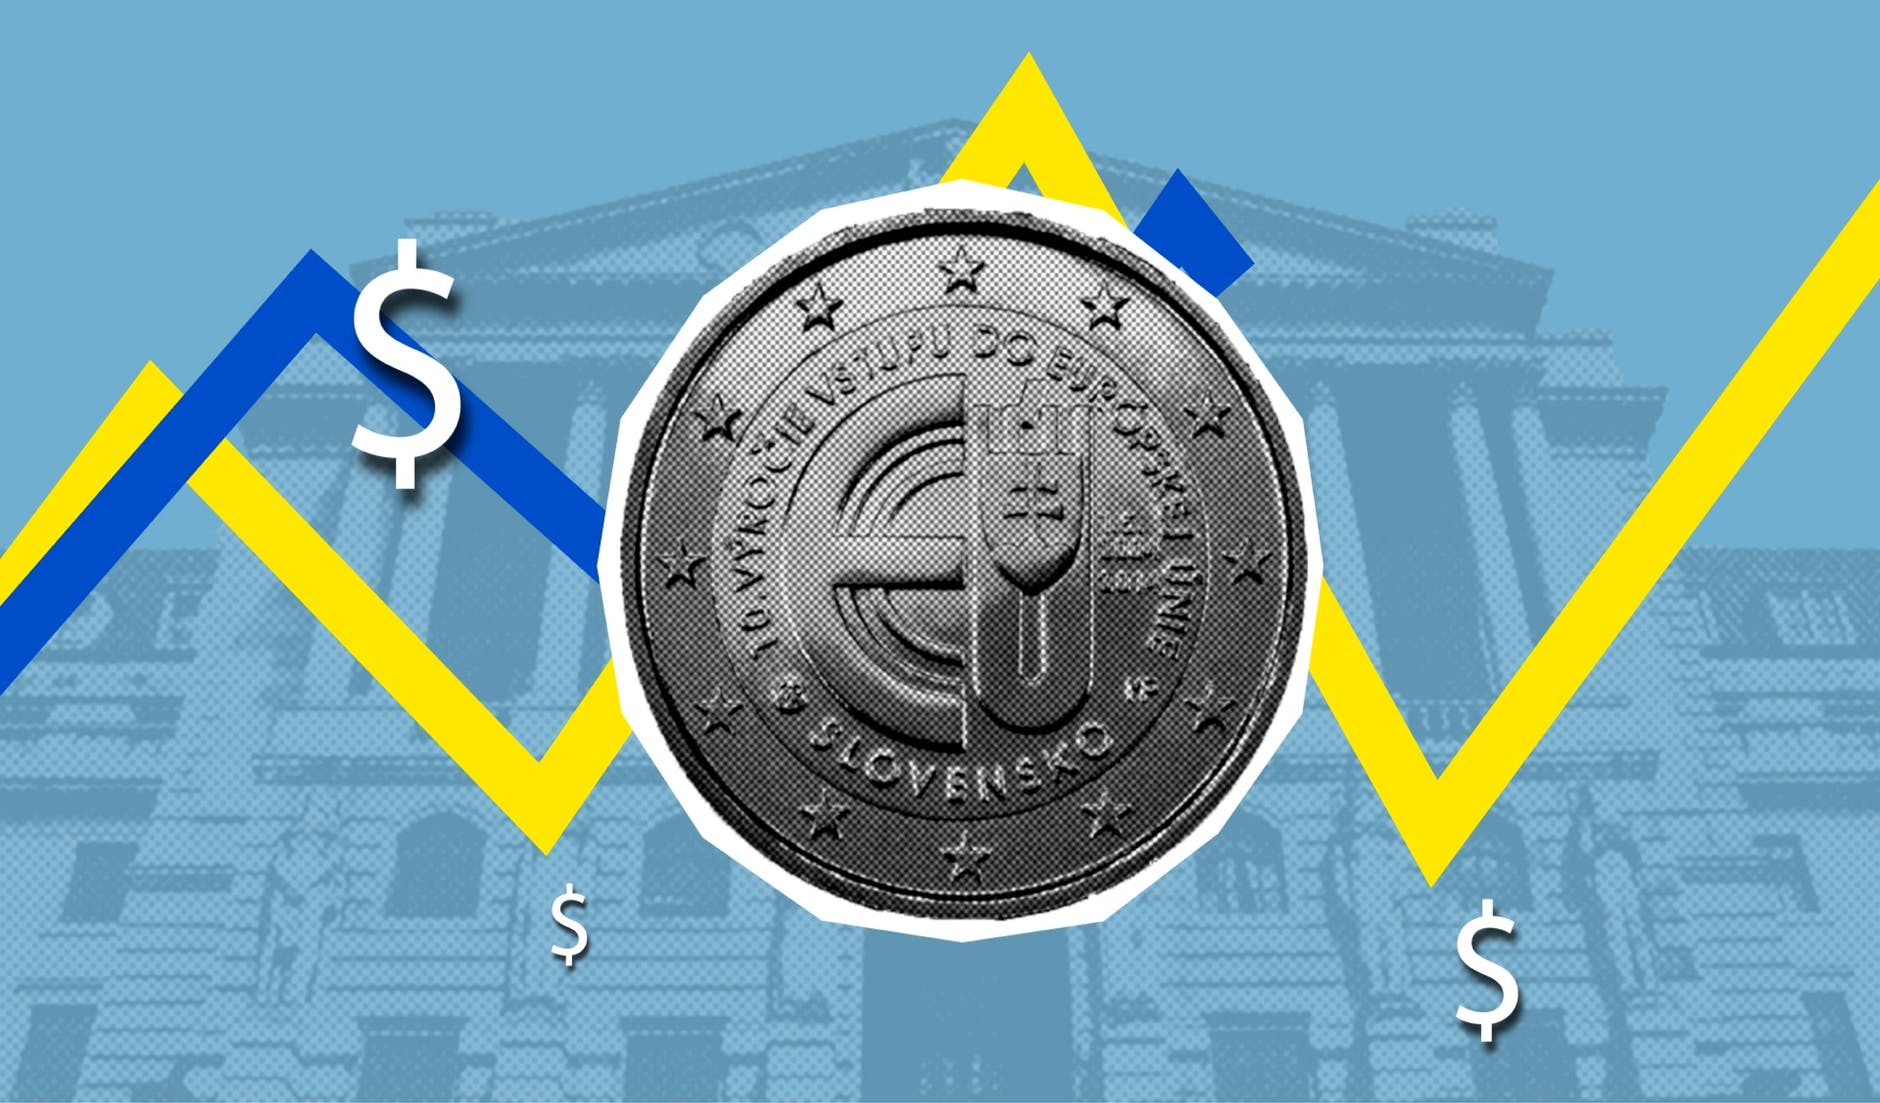 Währungen umrechnen mit der Basiswährung Dollar